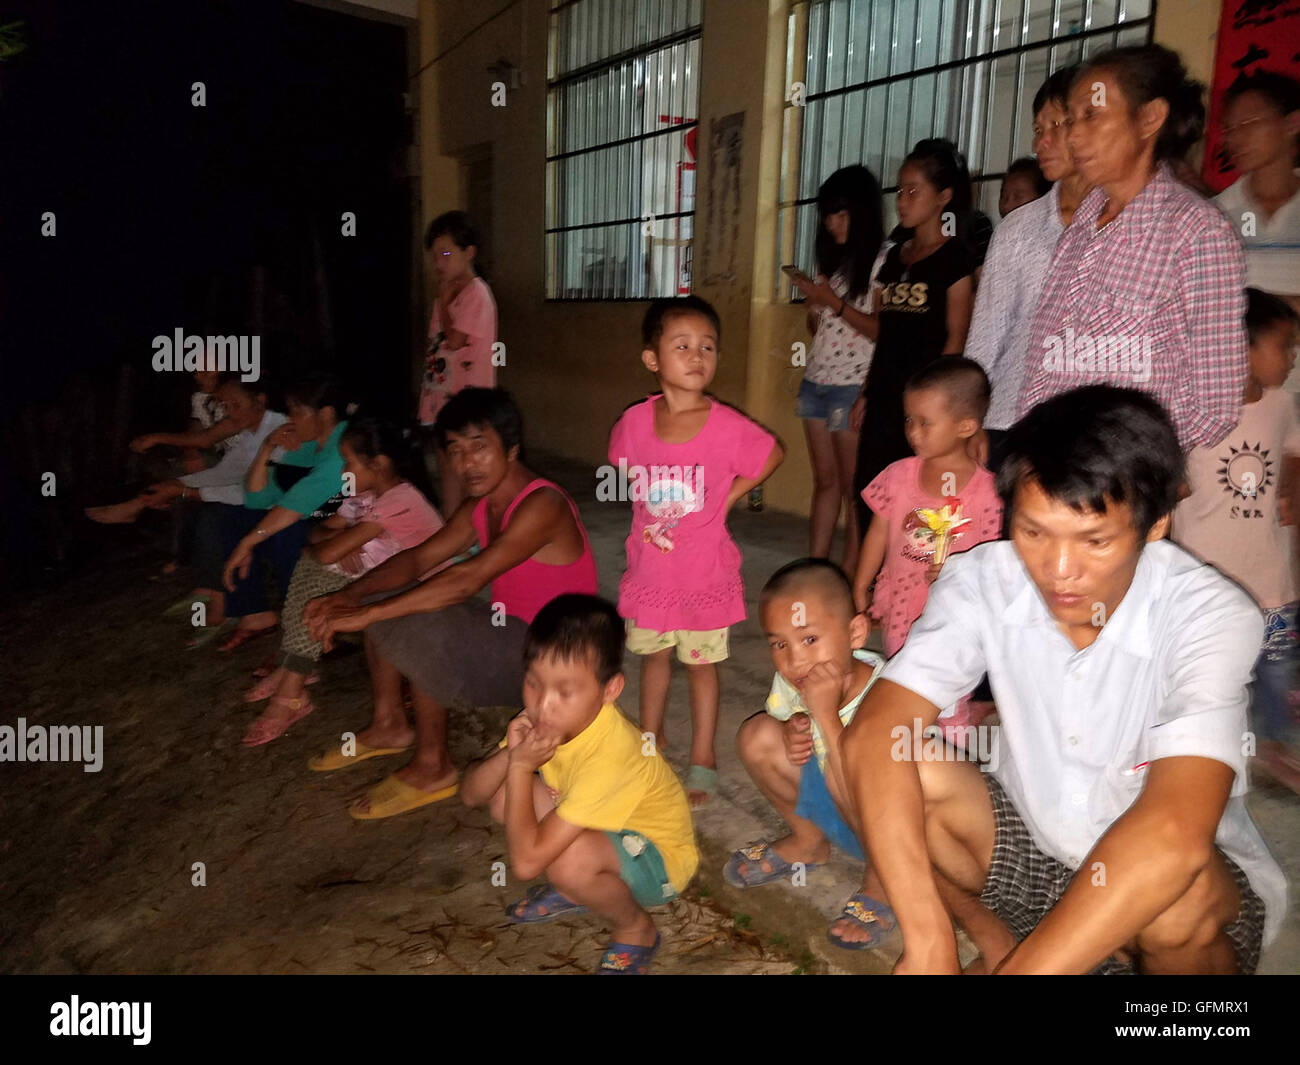 (160801)--CANGWU, 1. August 2016 (Xinhua)--am 31. Juli 2016 mit einem Handy aufgenommenes Foto zeigt Bewohner nach einem Erdbeben in Shatou Township von Cangwu County, South China Guangxi Zhuang autonomen Region eine vorübergehende Unterkunft zu übernachten. Ein Erdbeben der Stärke rund 5,4 auf der Richterskala getroffen Cangwu County Wuzhou Stadt in Guangx um 17:18 am Sonntag. Das Epizentrum wurde am 24,08 Grad nördlicher Breite und 111,56 Grad östlicher Länge, mit einer Tiefe von 10 Kilometern, nach China Erdbeben Netzwerke Center (CENC) überwacht. Keine Verletzten wurden gemeldet. (Xinhua/Yu Yanmin Stockfoto